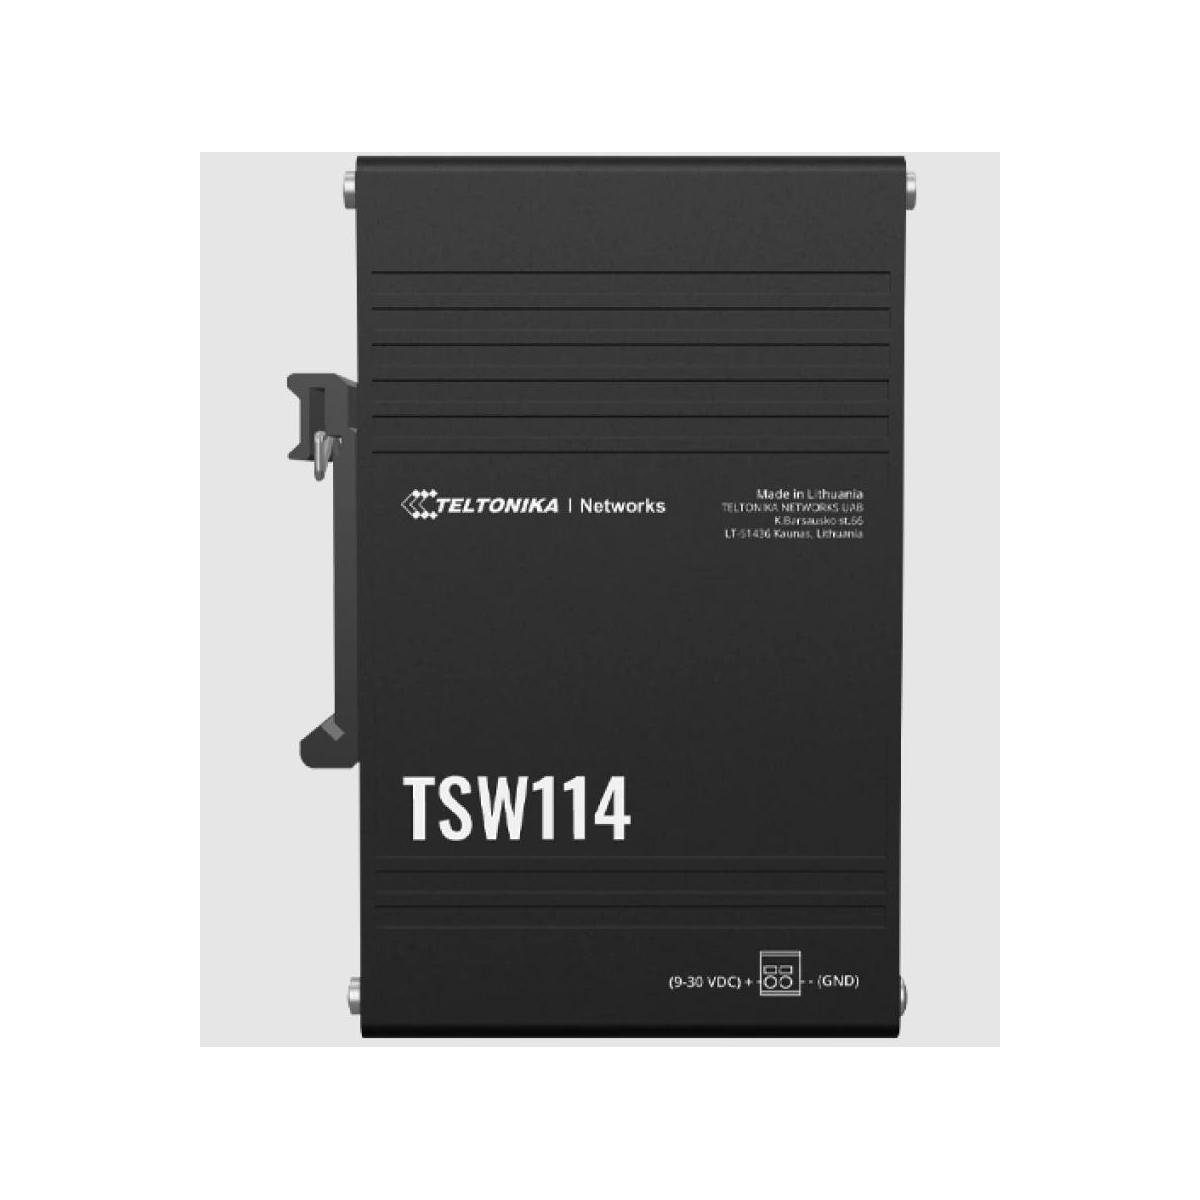 Teltonika TSW114 - Switch DIN-Schienenhalterung mit Netzwerk-Switch integrierter